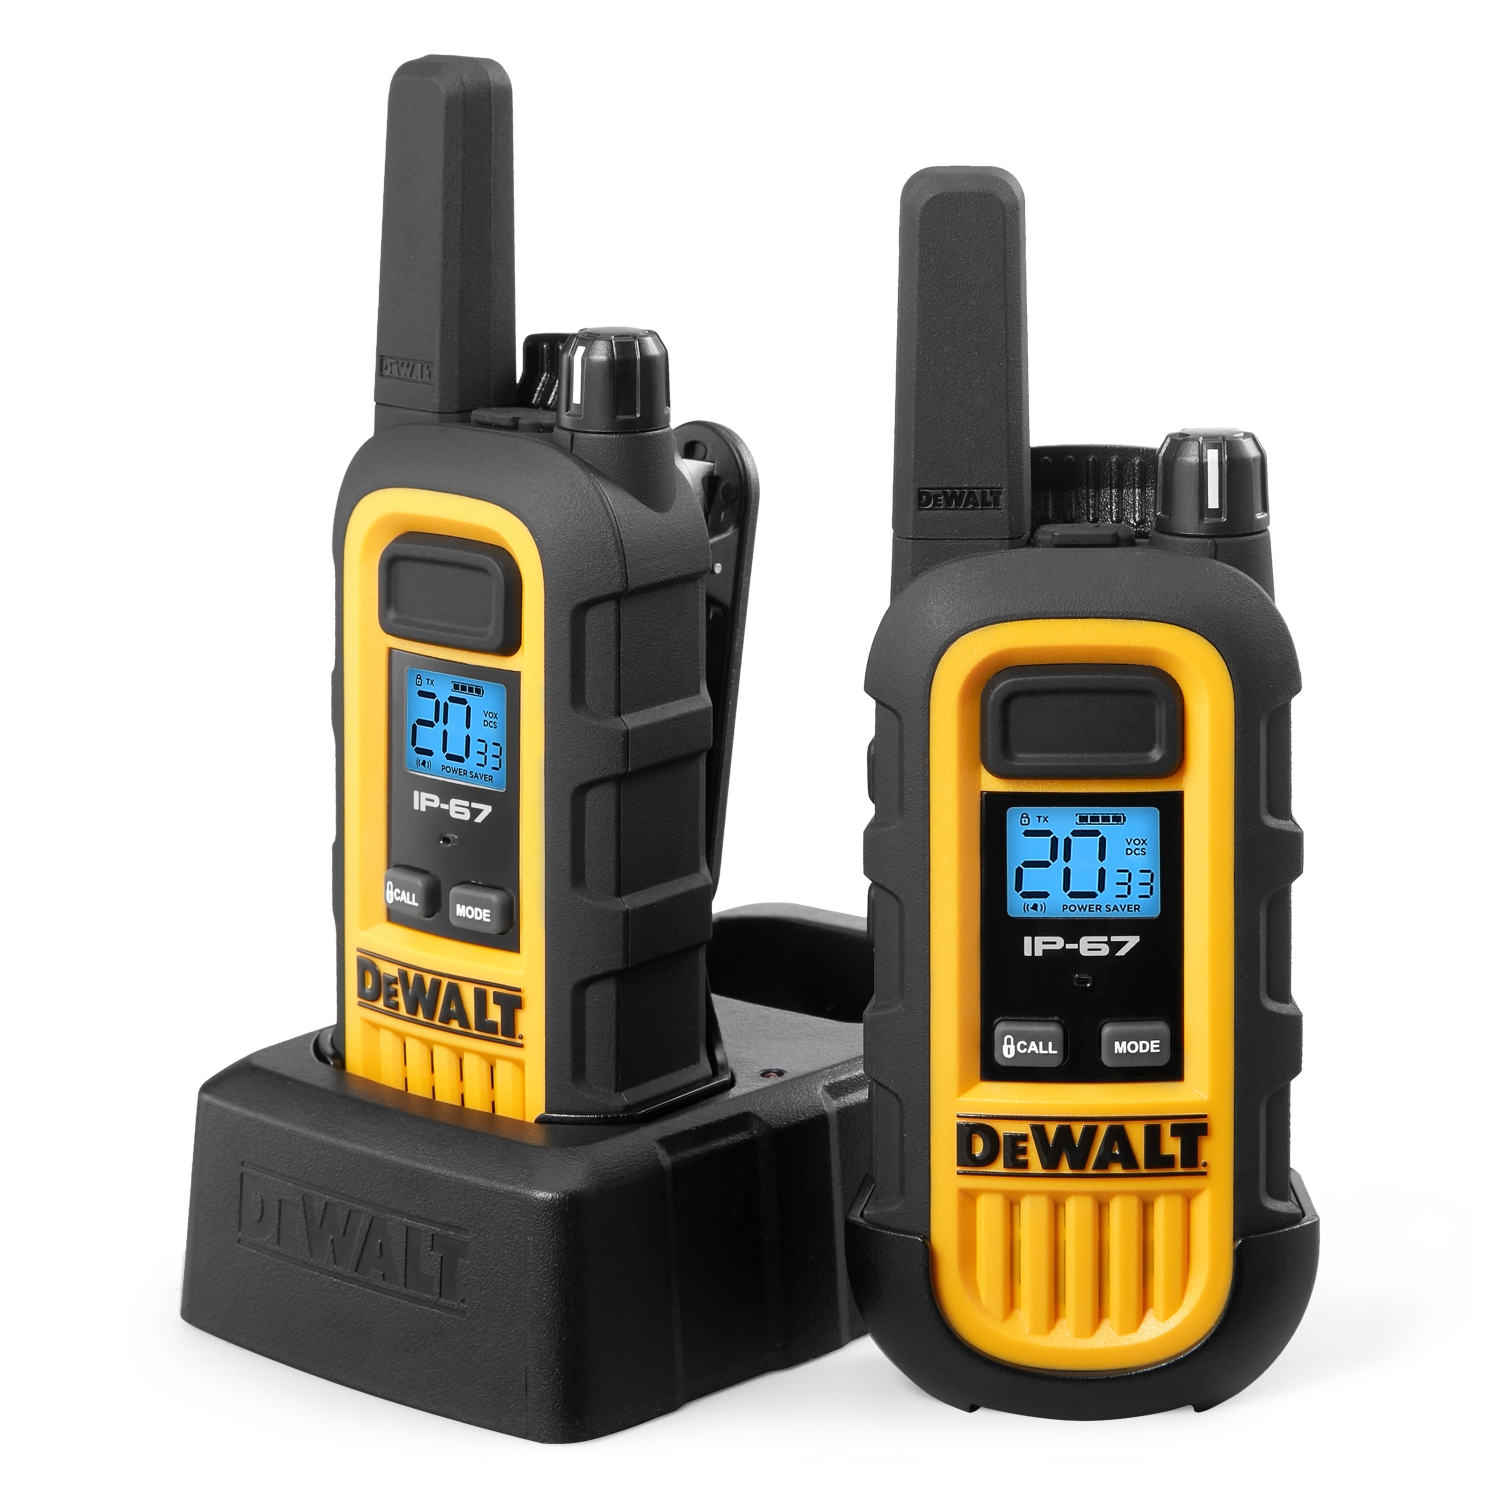 2 DEWALT DXFRS300 Walkie Talkies - 1 Watt Heavy Duty Waterproof, Shock Resistant, Long Range & Rechargeable Two-Way Radio Set with VOX, 2 Pack of Radios (7084944)